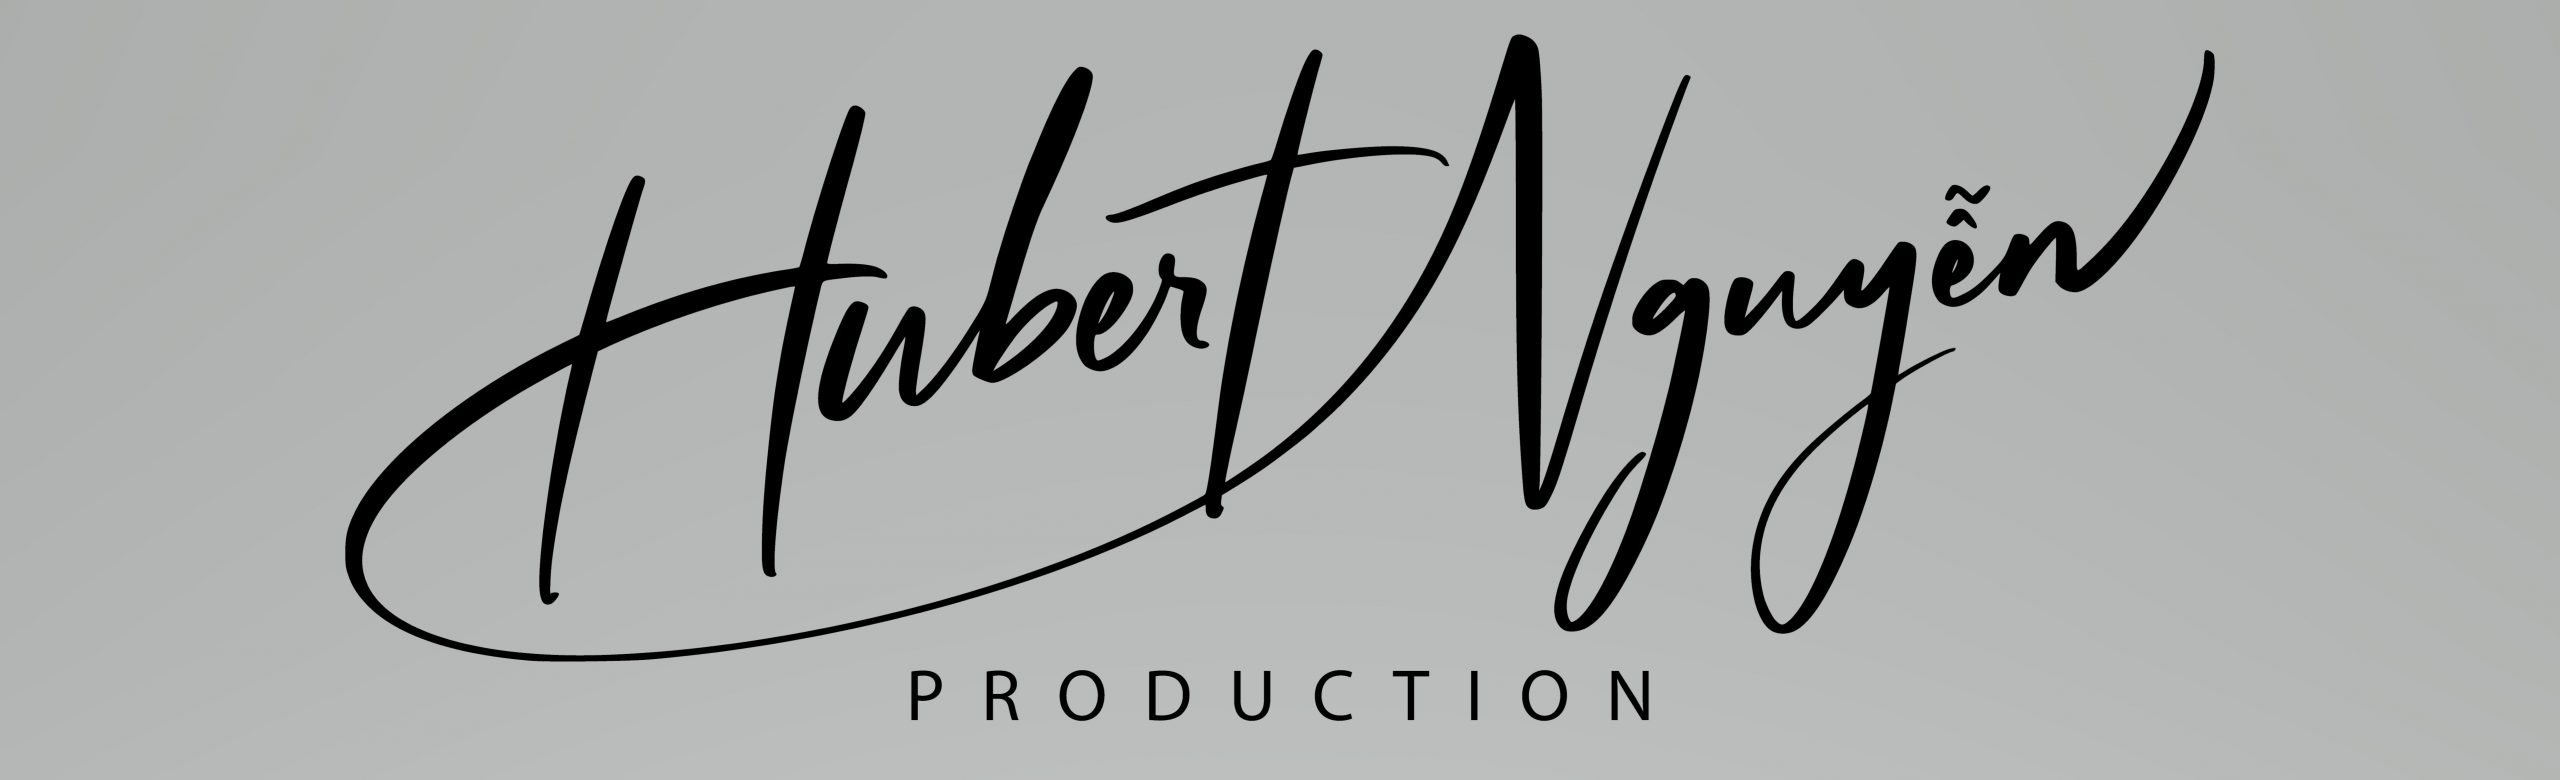 Hubert Nguyen Production Logo